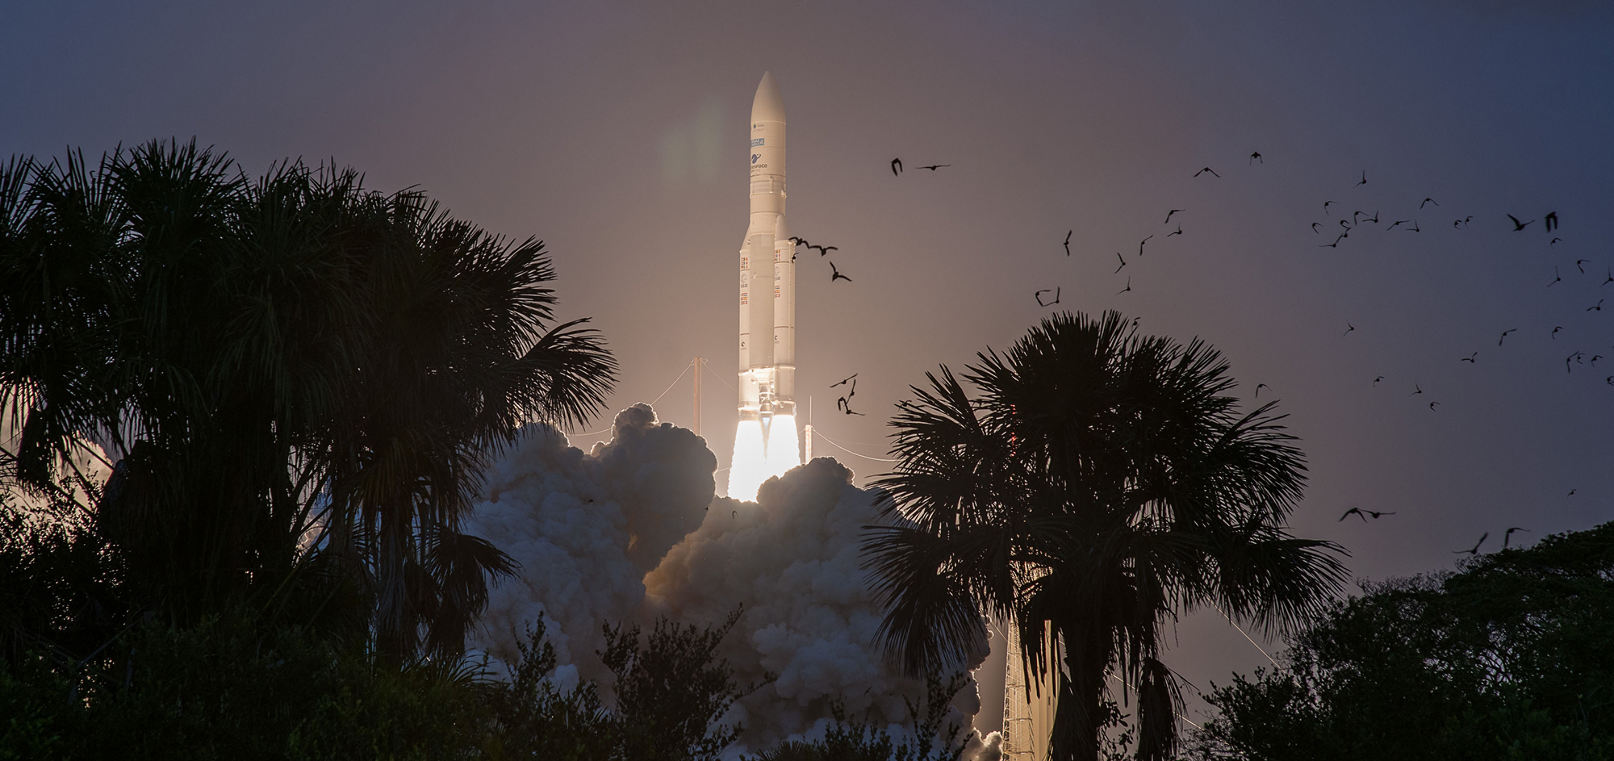 Ariane 5 launches 200th satellite